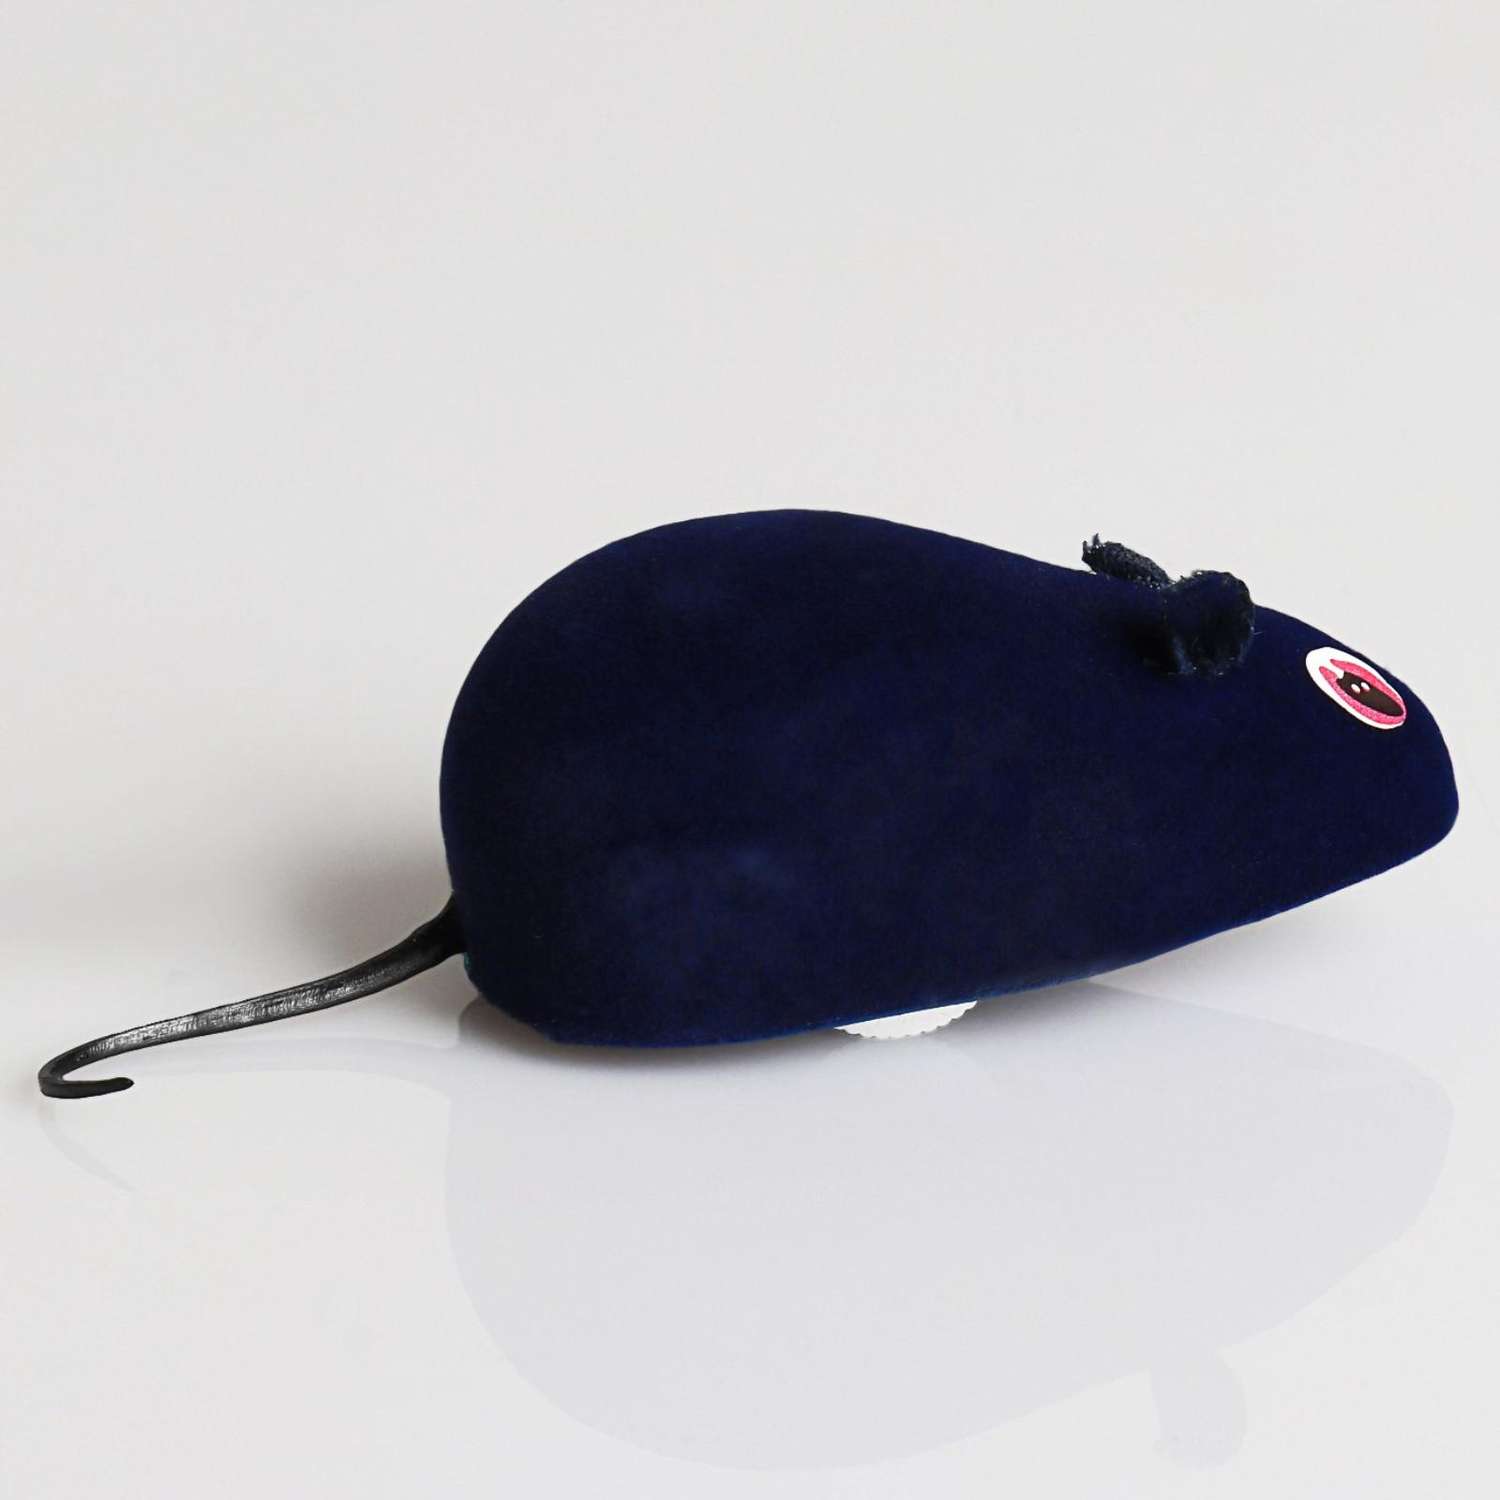 Мышь заводная Пижон 7 см синяя - фото 2